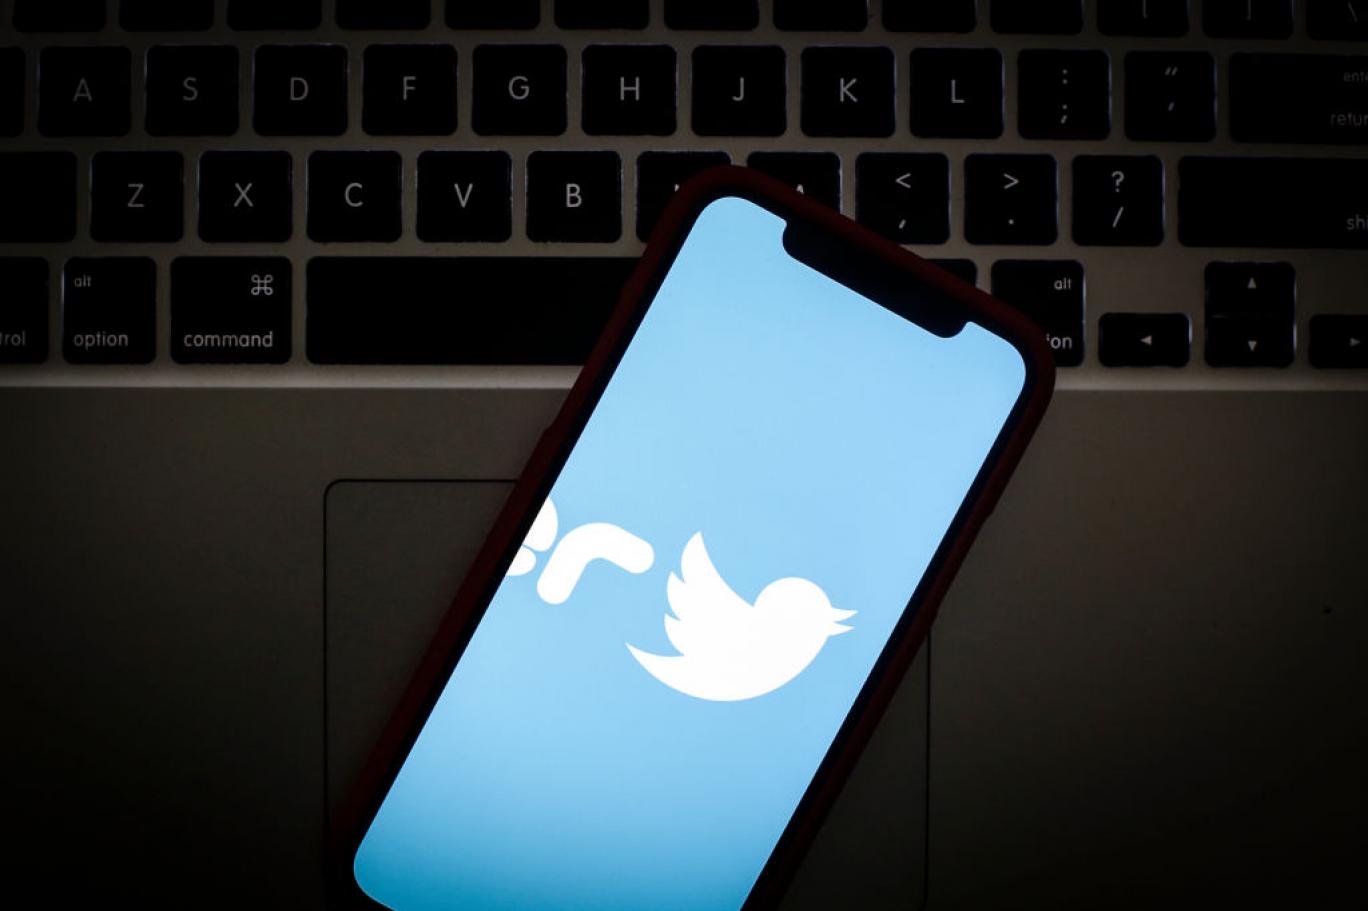 ميزات جديدة قد تهم الملايين من المستخدمين تظهر في تطبيق تويتر